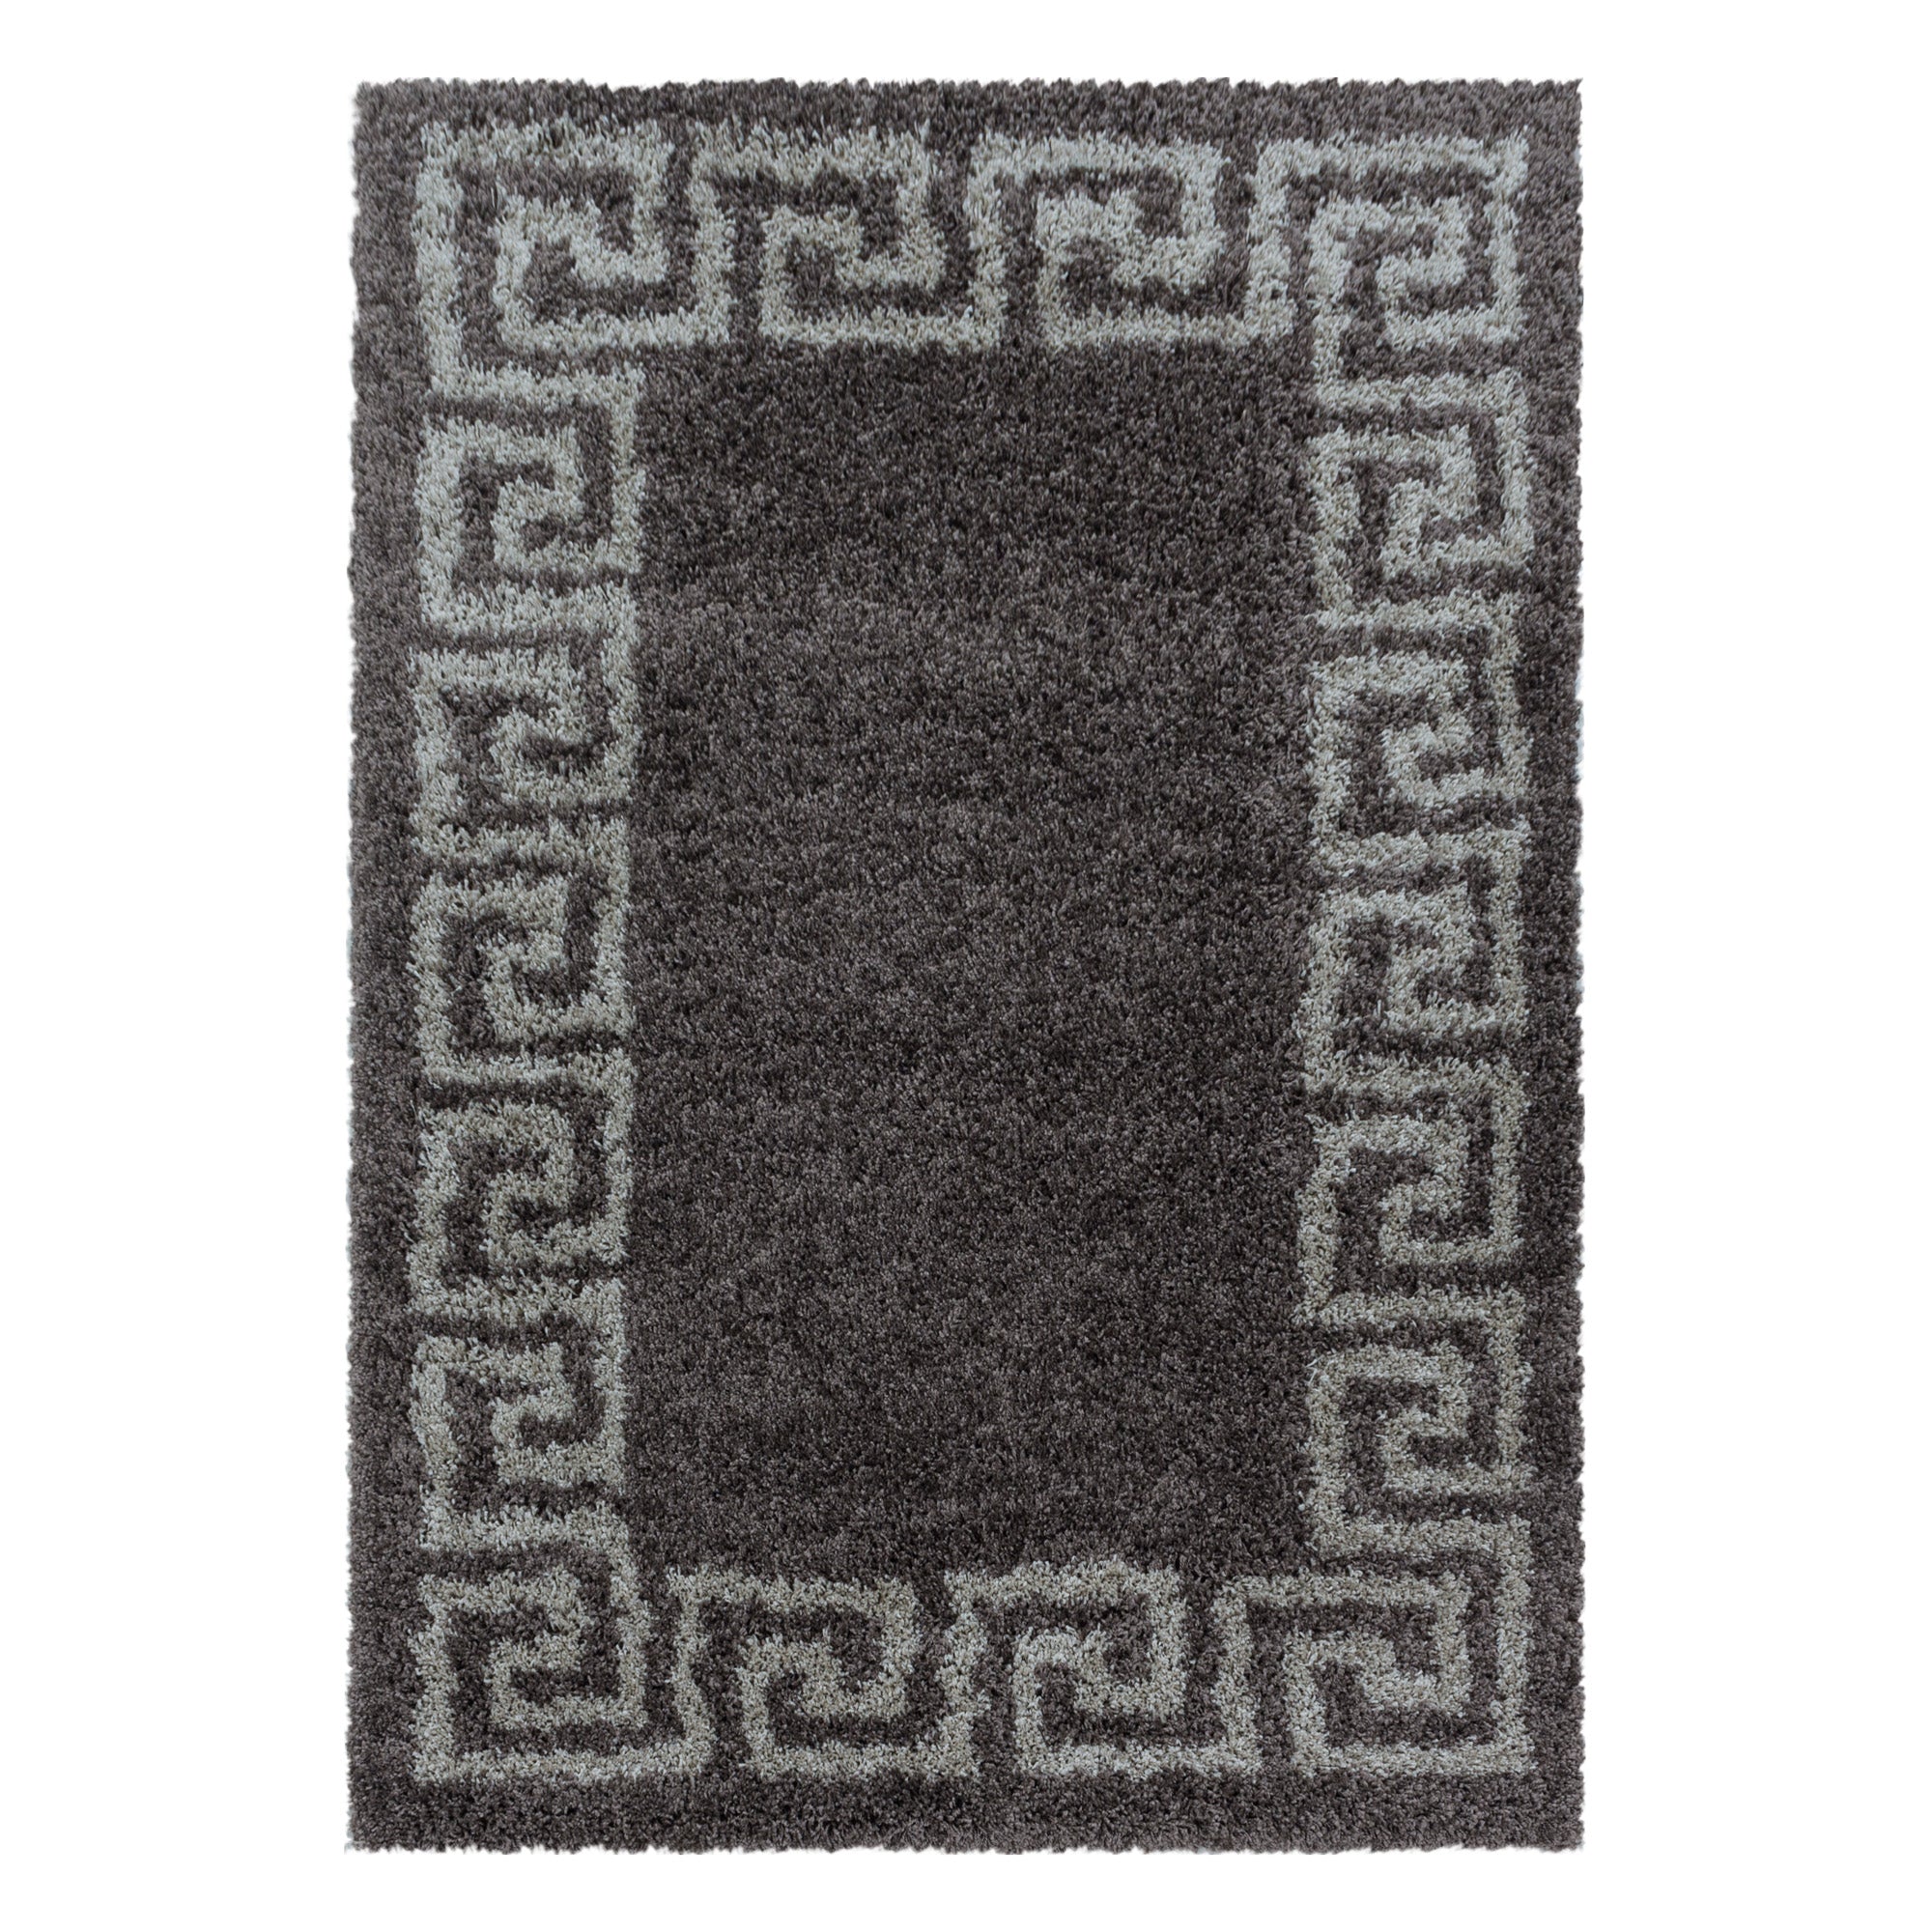 Design Hochflor Teppich Wohnzimmerteppich Muster Antike Bordüre Farbe Taupe